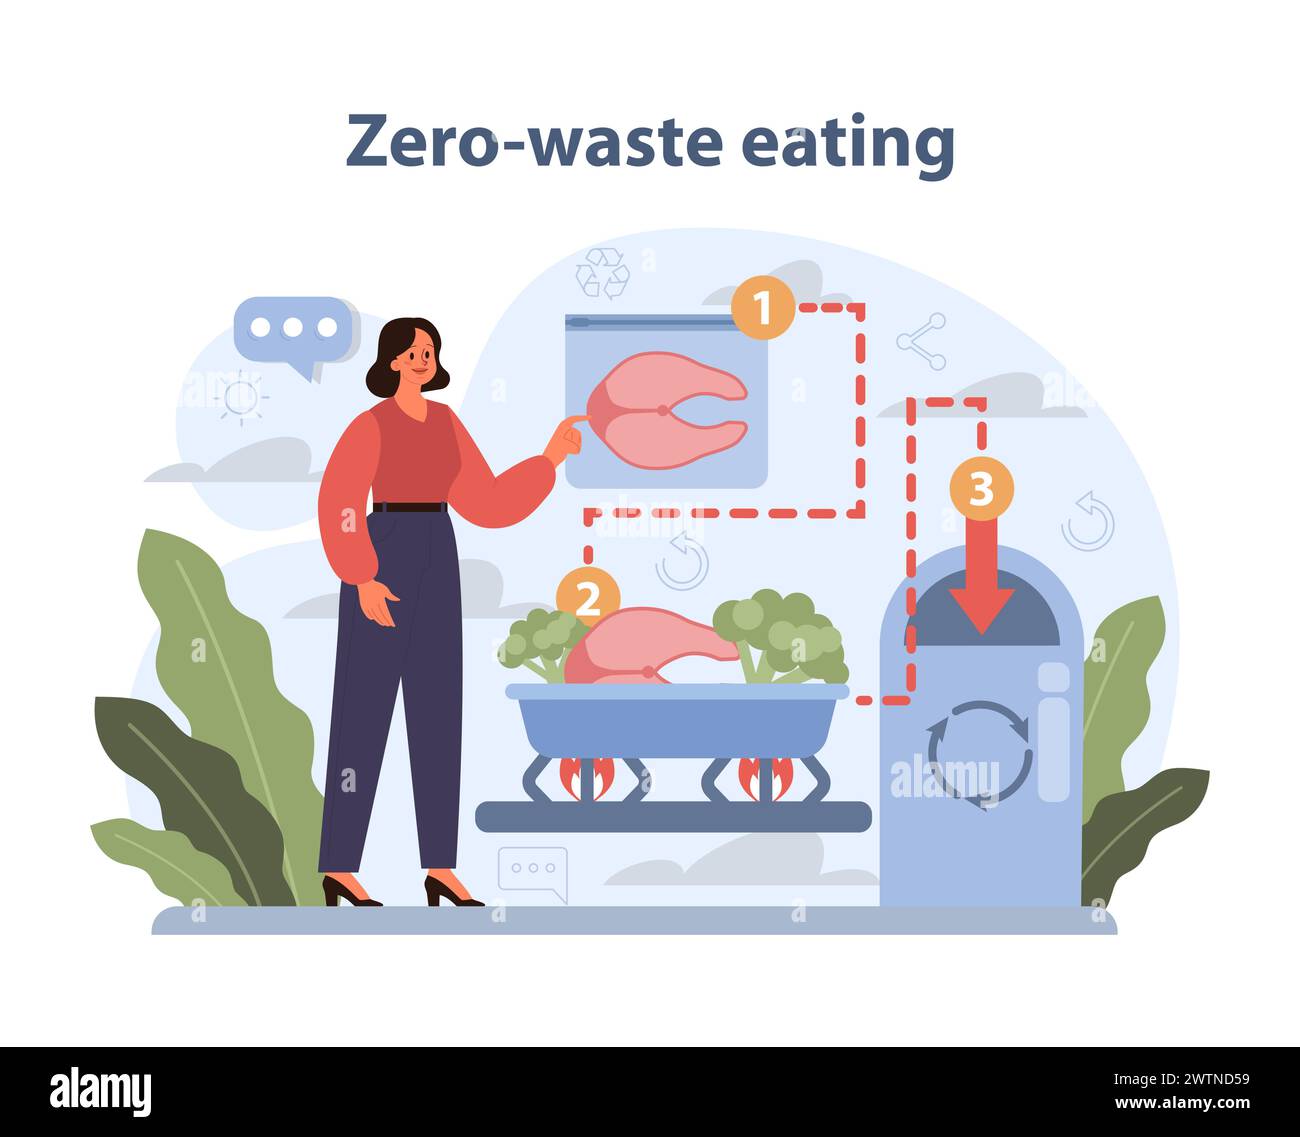 Concetto di mangiare senza sprechi. Illustrazione di una donna che pratica i principi dello zero spreco nella preparazione degli alimenti, riducendo l'impatto ambientale. Illustrazione Vettoriale